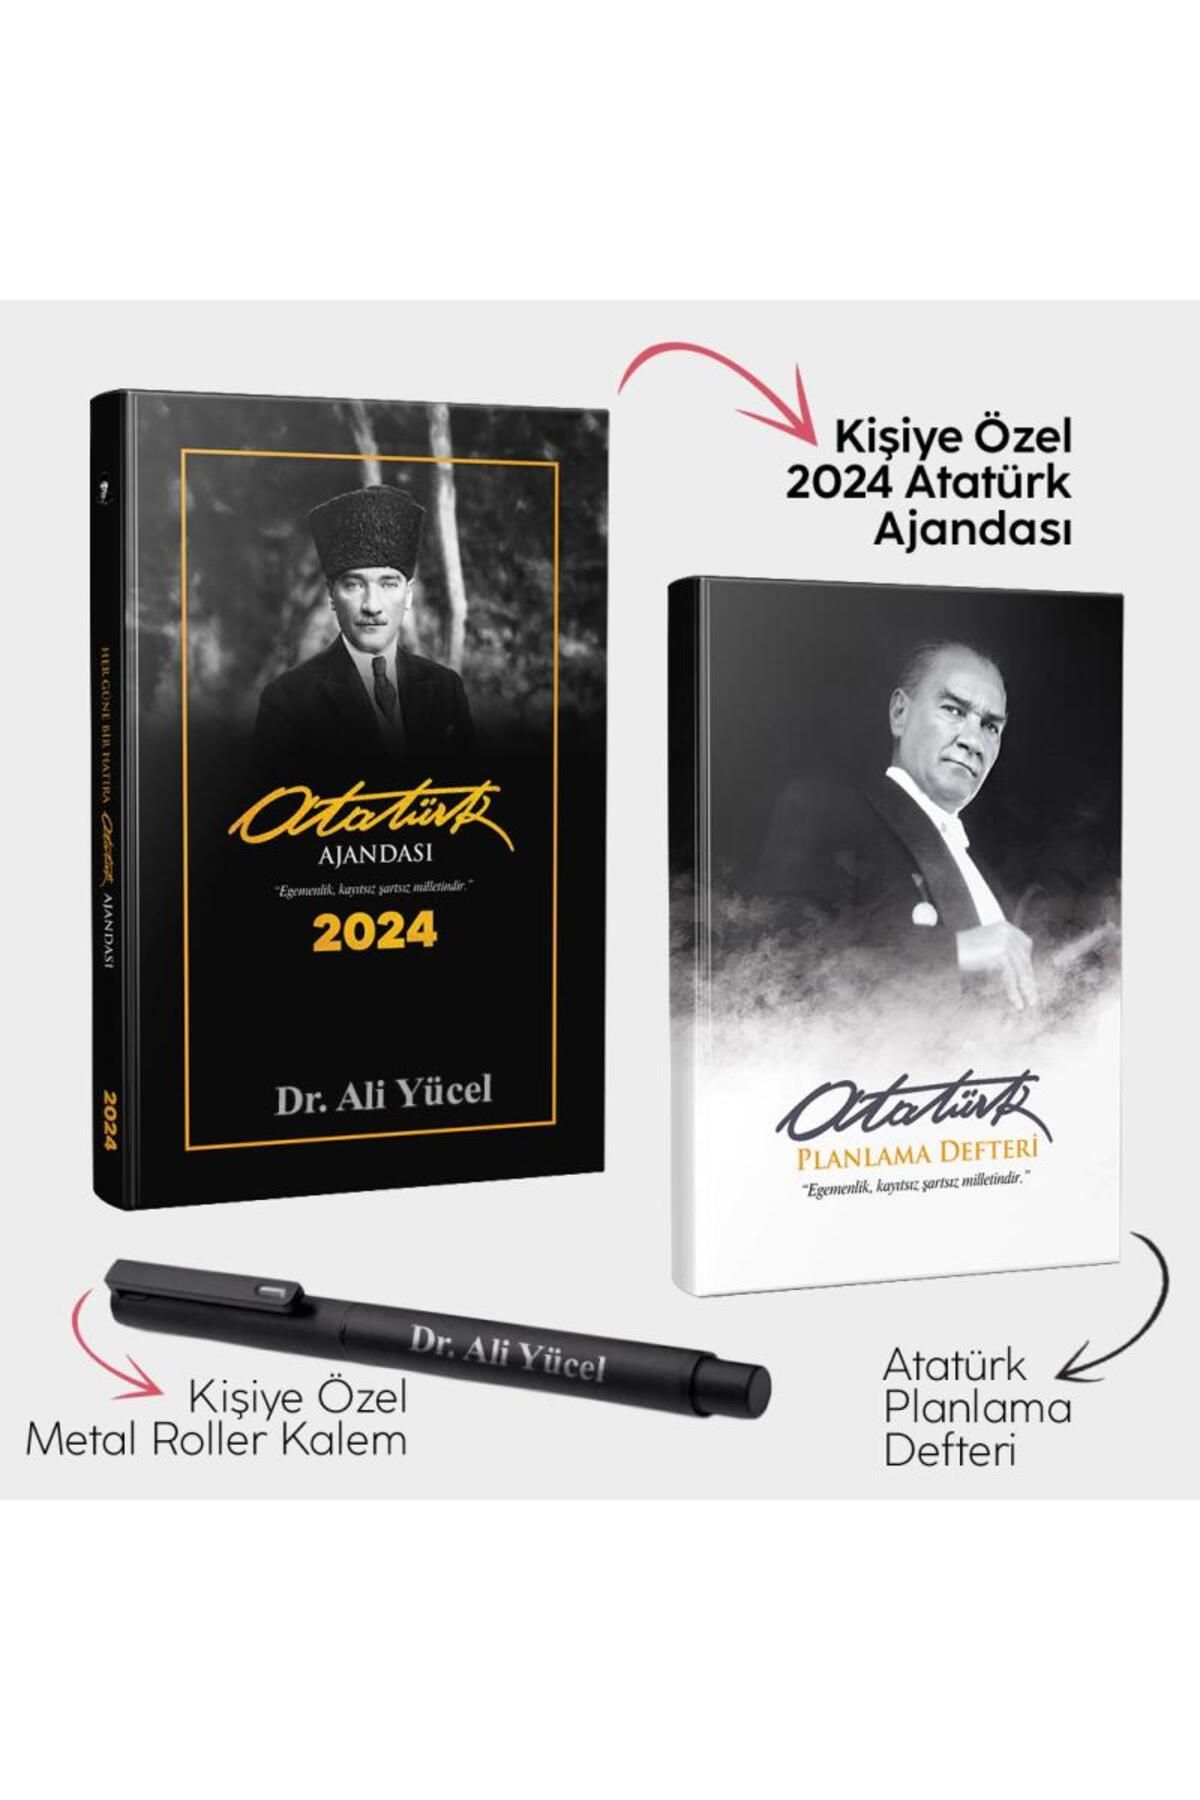 Halk Kitabevi Kişiye Özel - Trablusgarp 2024 Atatürk Ajandası - Atatürk Planlama Defteri ve Metal Roller Kalem